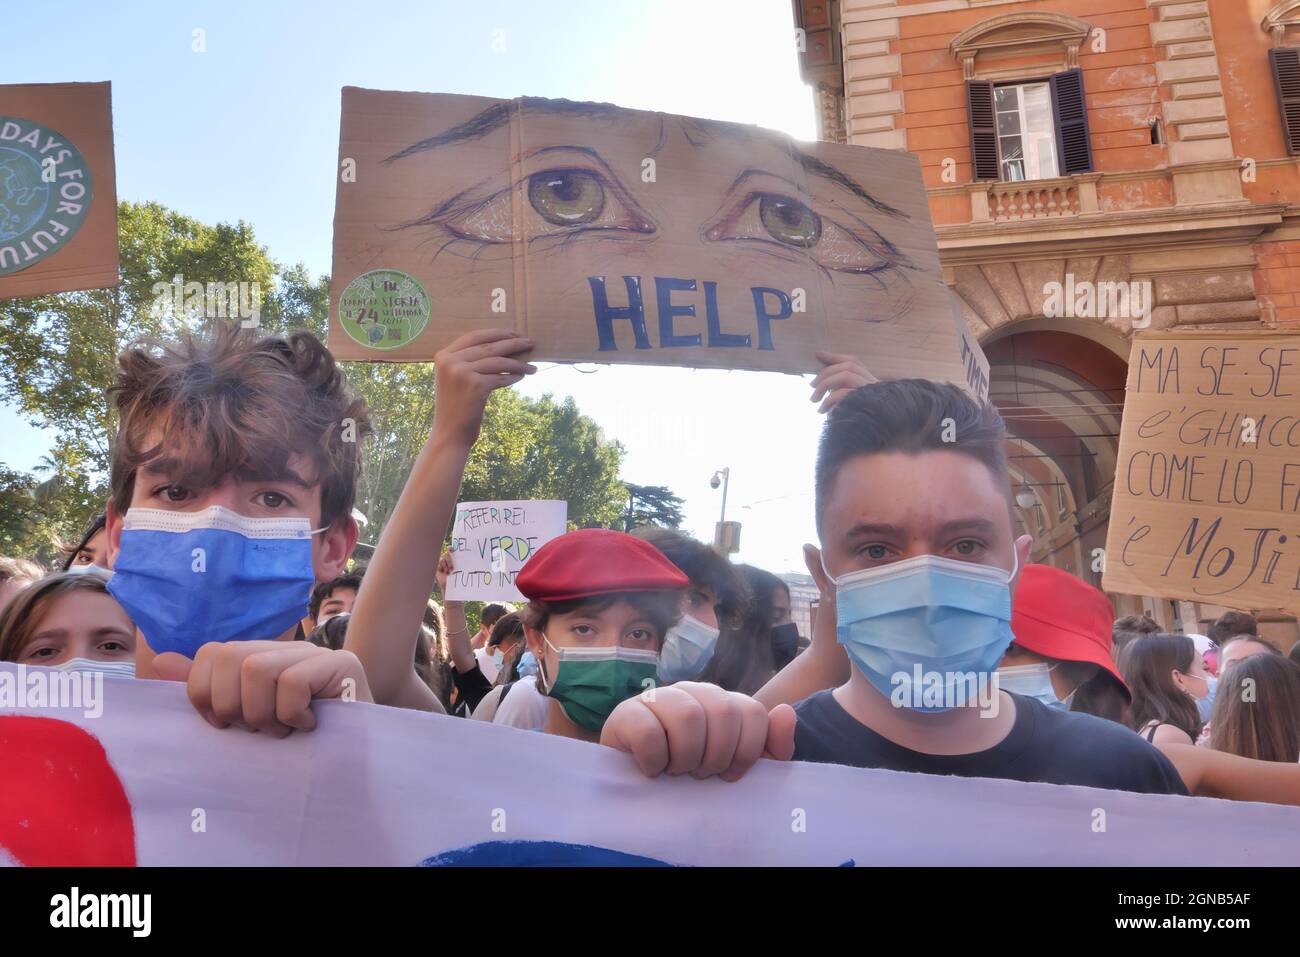 VENERDÌ PER FUTURE.YOUNG SULLA STRADA PER PROTESTARE IL CAMBIAMENTO CLIMATICO Foto Stock